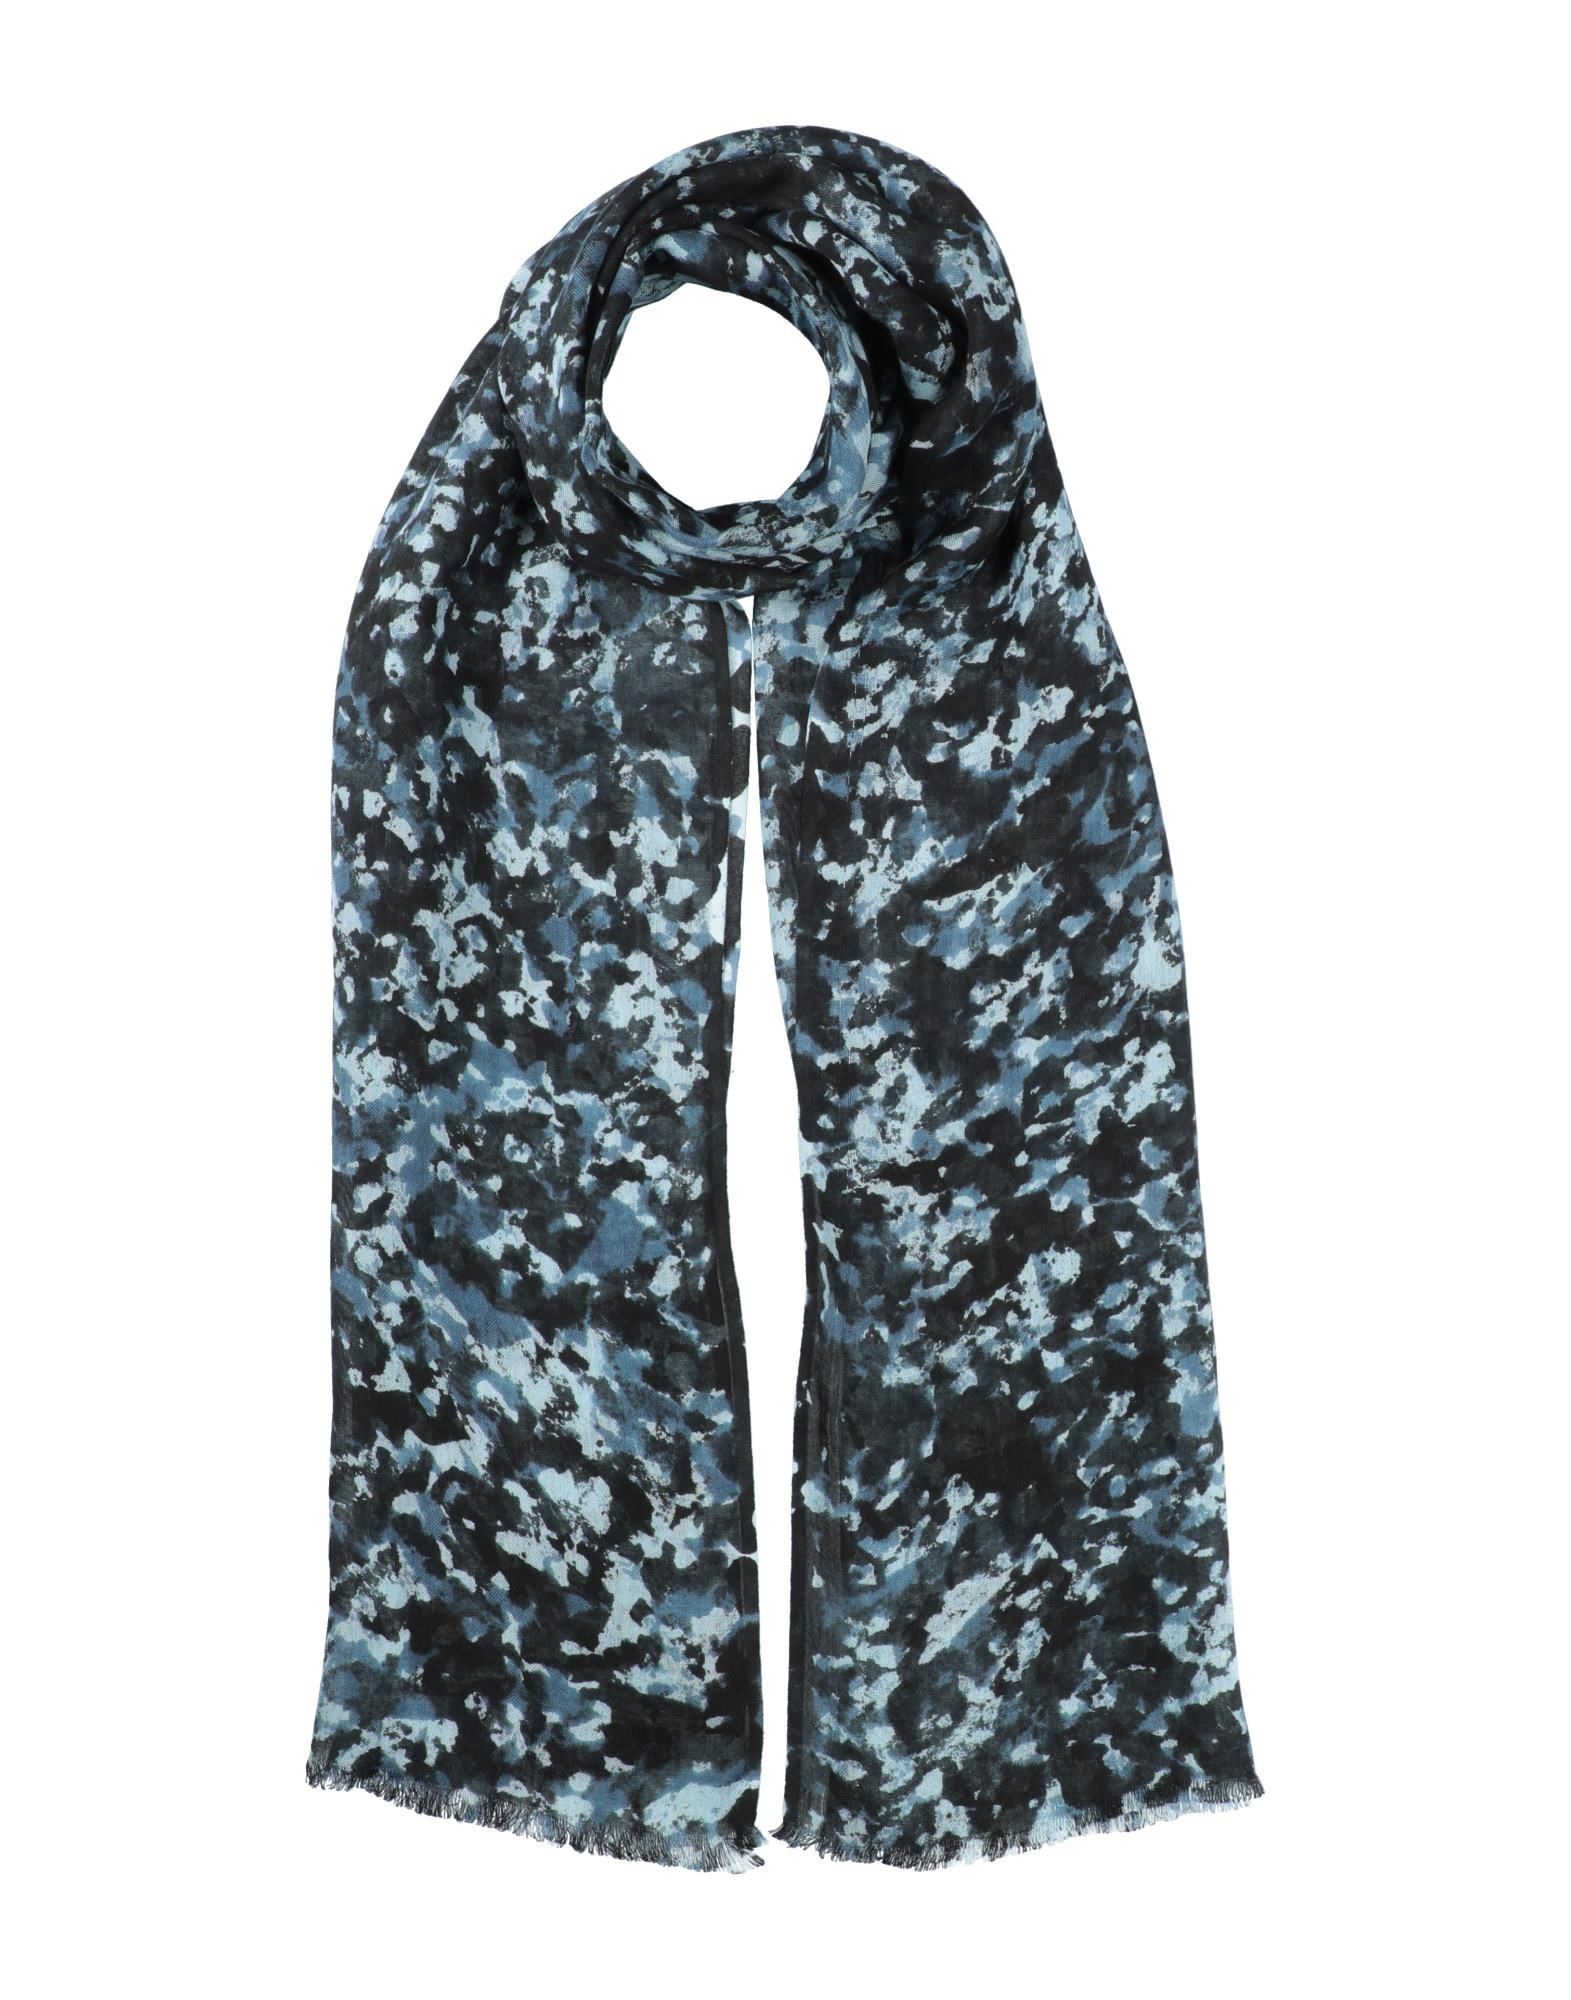 12797円 【数量は多】 フィオリオ FIORIO メンズ マフラー ストール スカーフ アクセサリー Scarves Dark blue